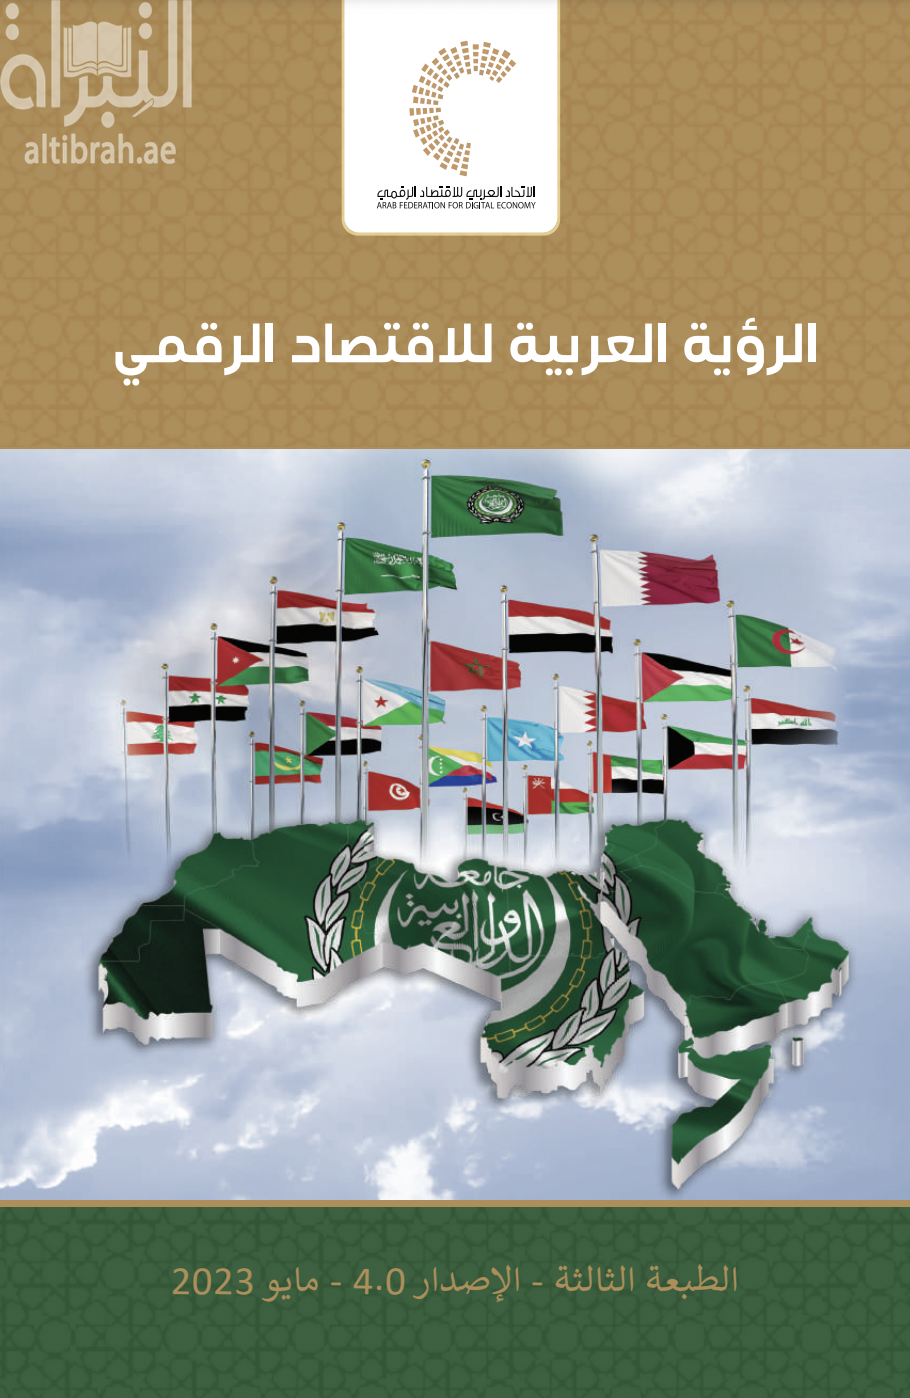 كتاب الرؤية العربية للإقتصاد الرقمي